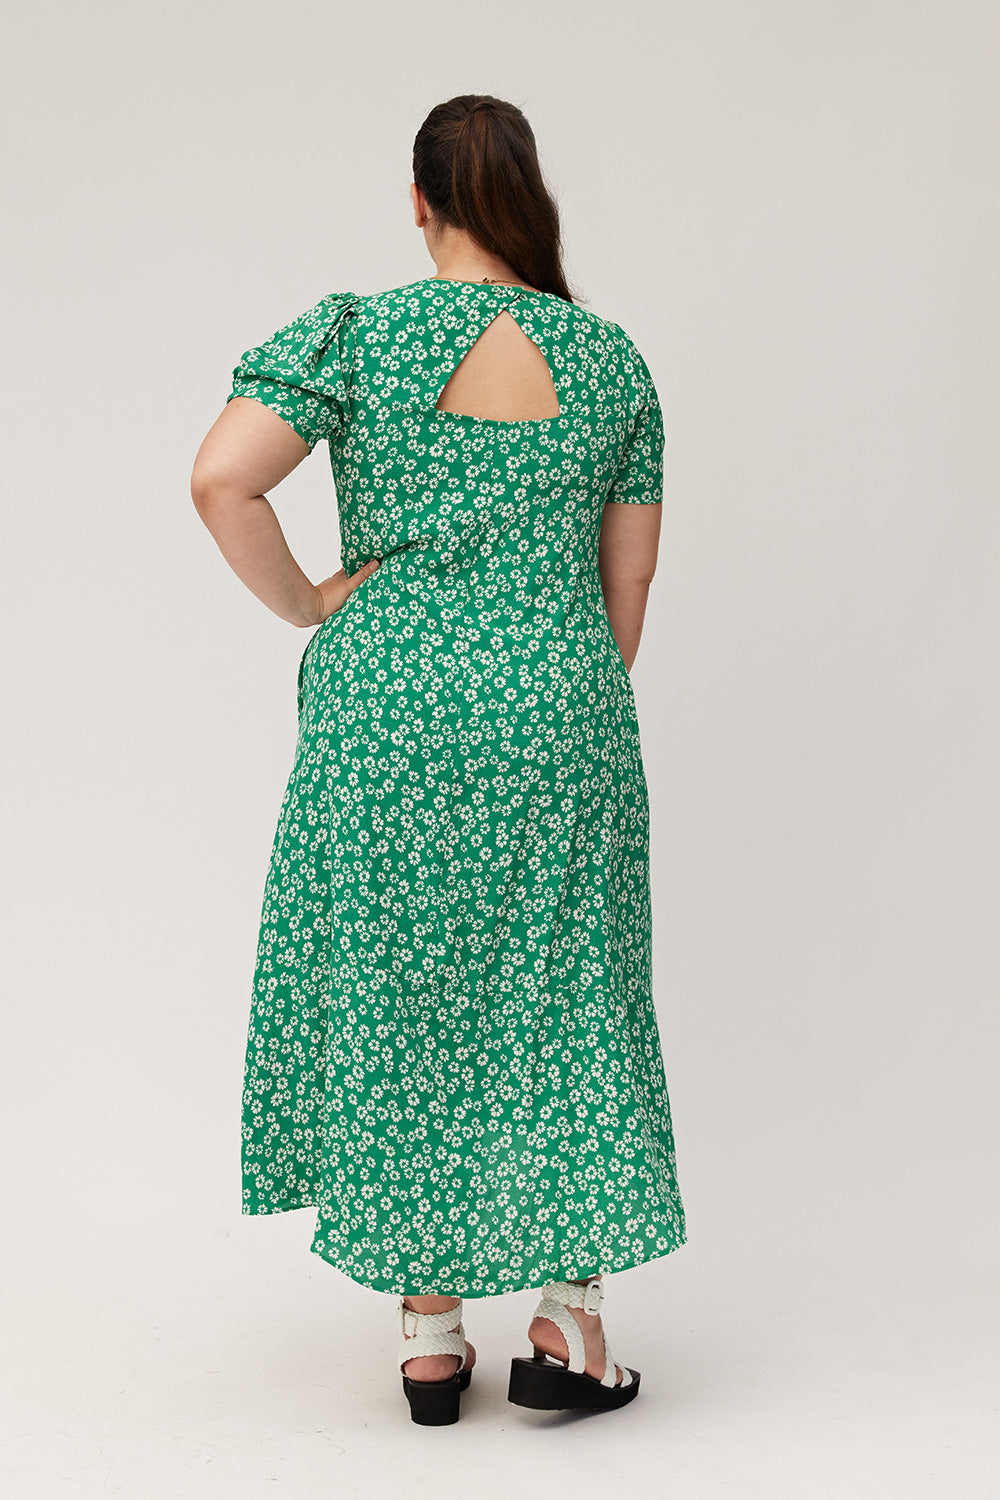 Magda Dress Green Daisy – Lemon Tree Design New Zealand